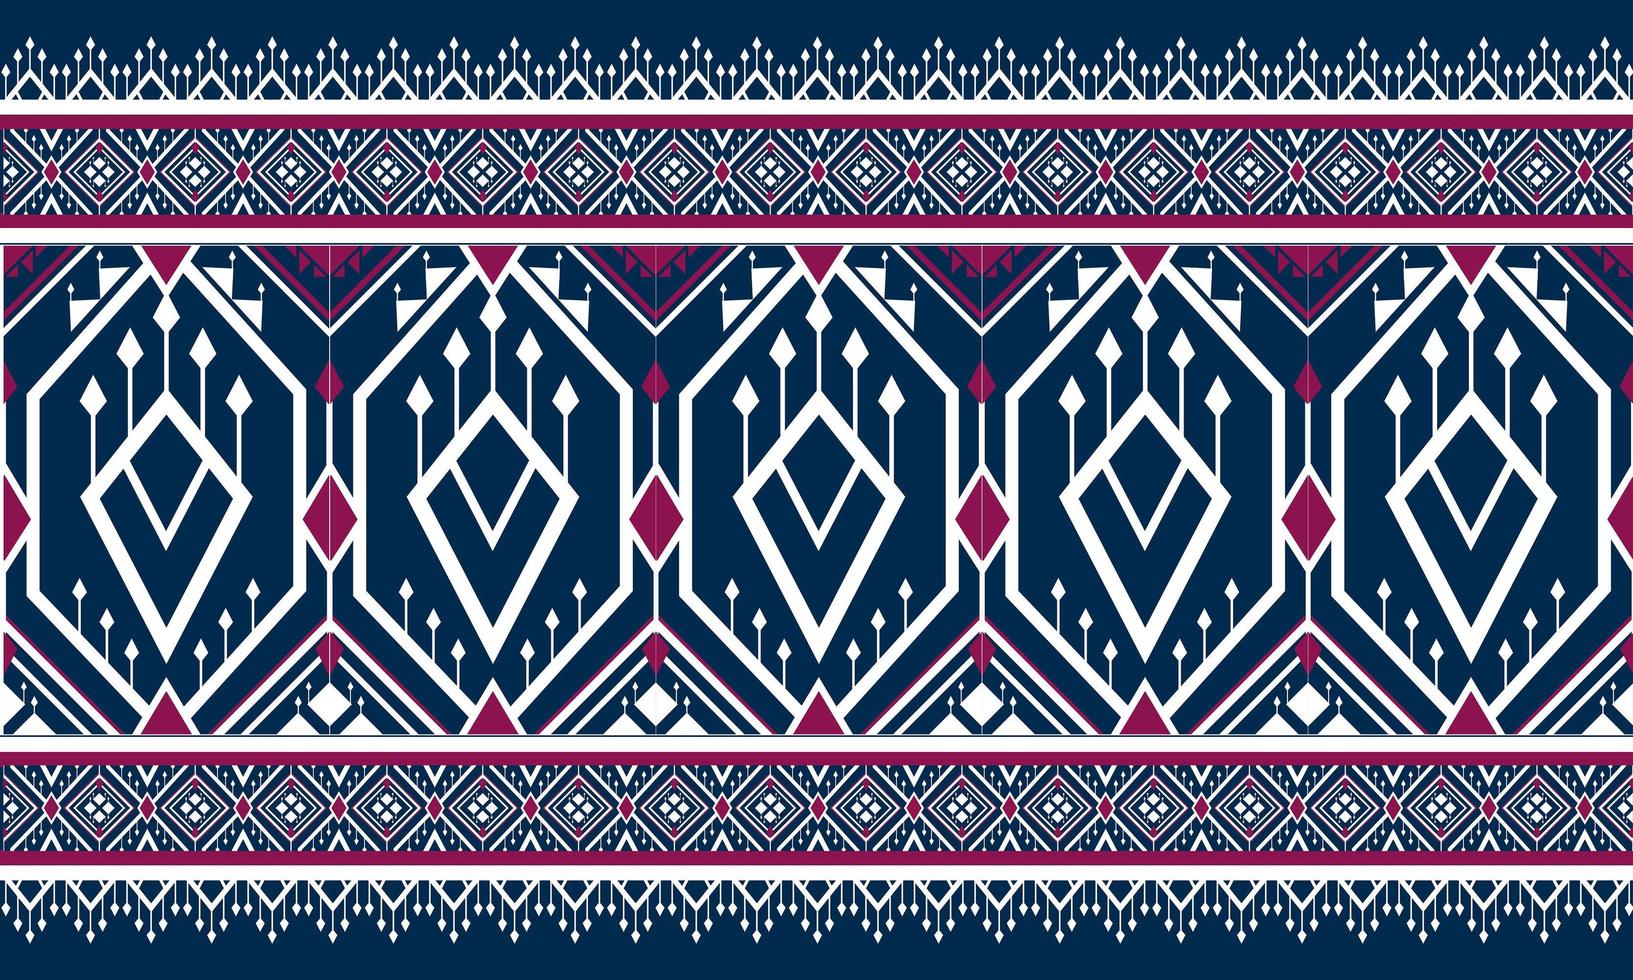 geometriska etniska orientaliska mönster traditionell design för bakgrund, matta, tapeter, kläder, omslag, batik, tyg, vektor illustration.broderi stil.